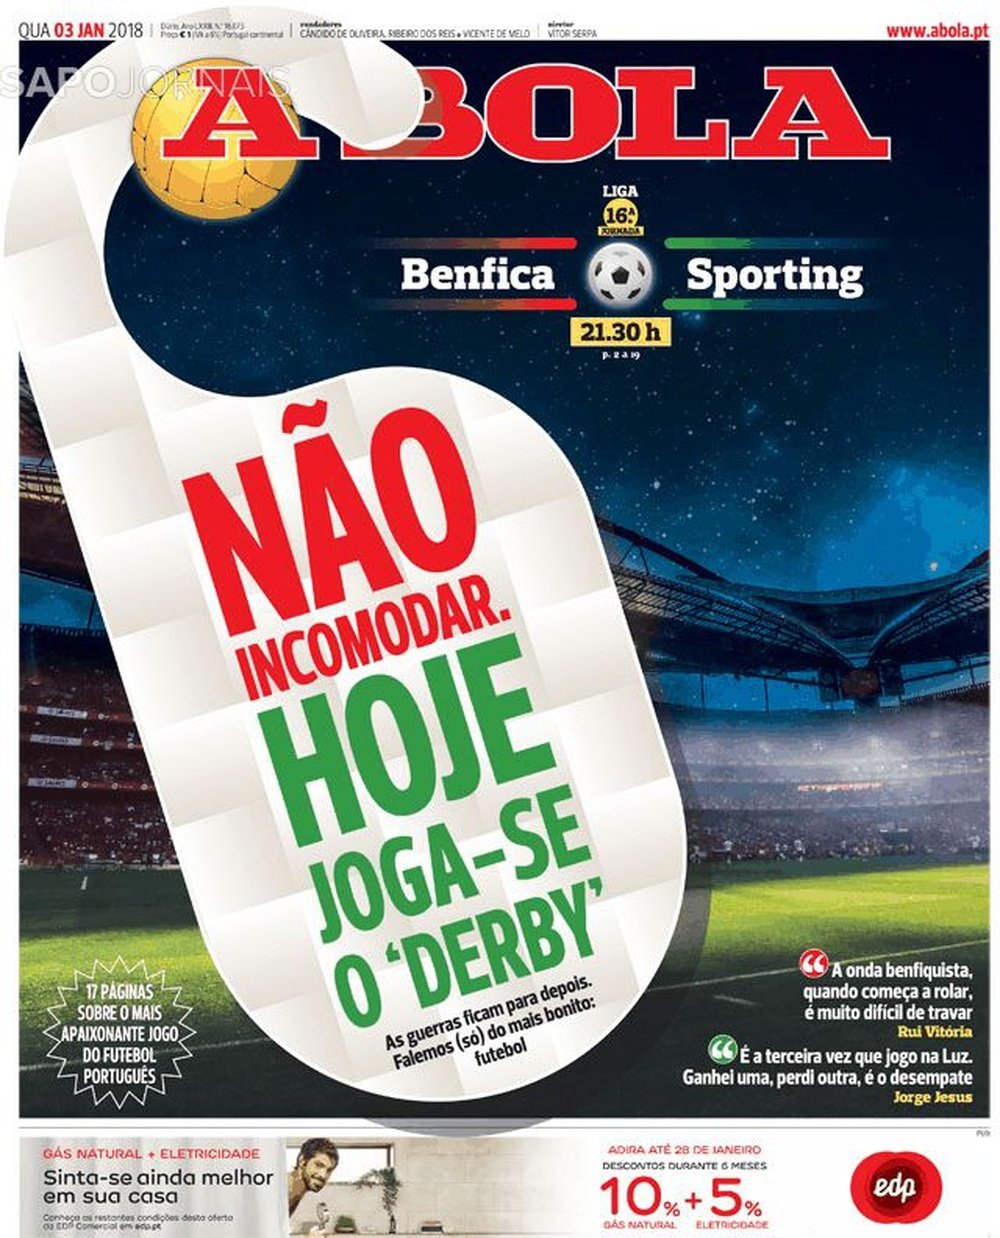 A capa do jornal 'A Bola' de 3 de janeiro de 2018. A Bola